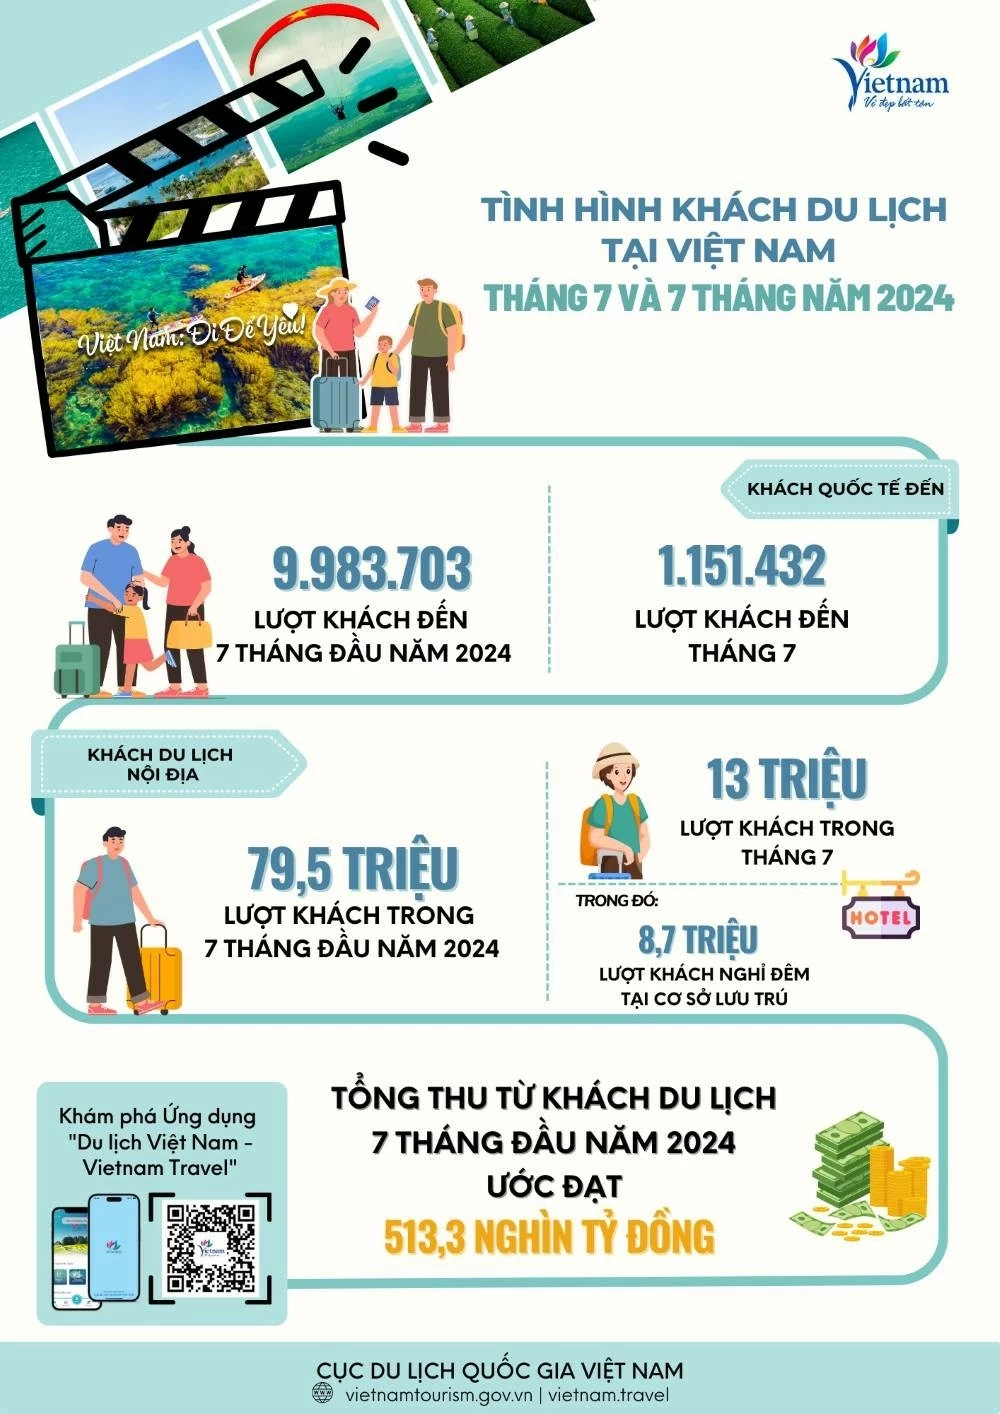 7 tháng đầu năm, Việt Nam đón gần 10 triệu lượt khách du lịch quốc tế